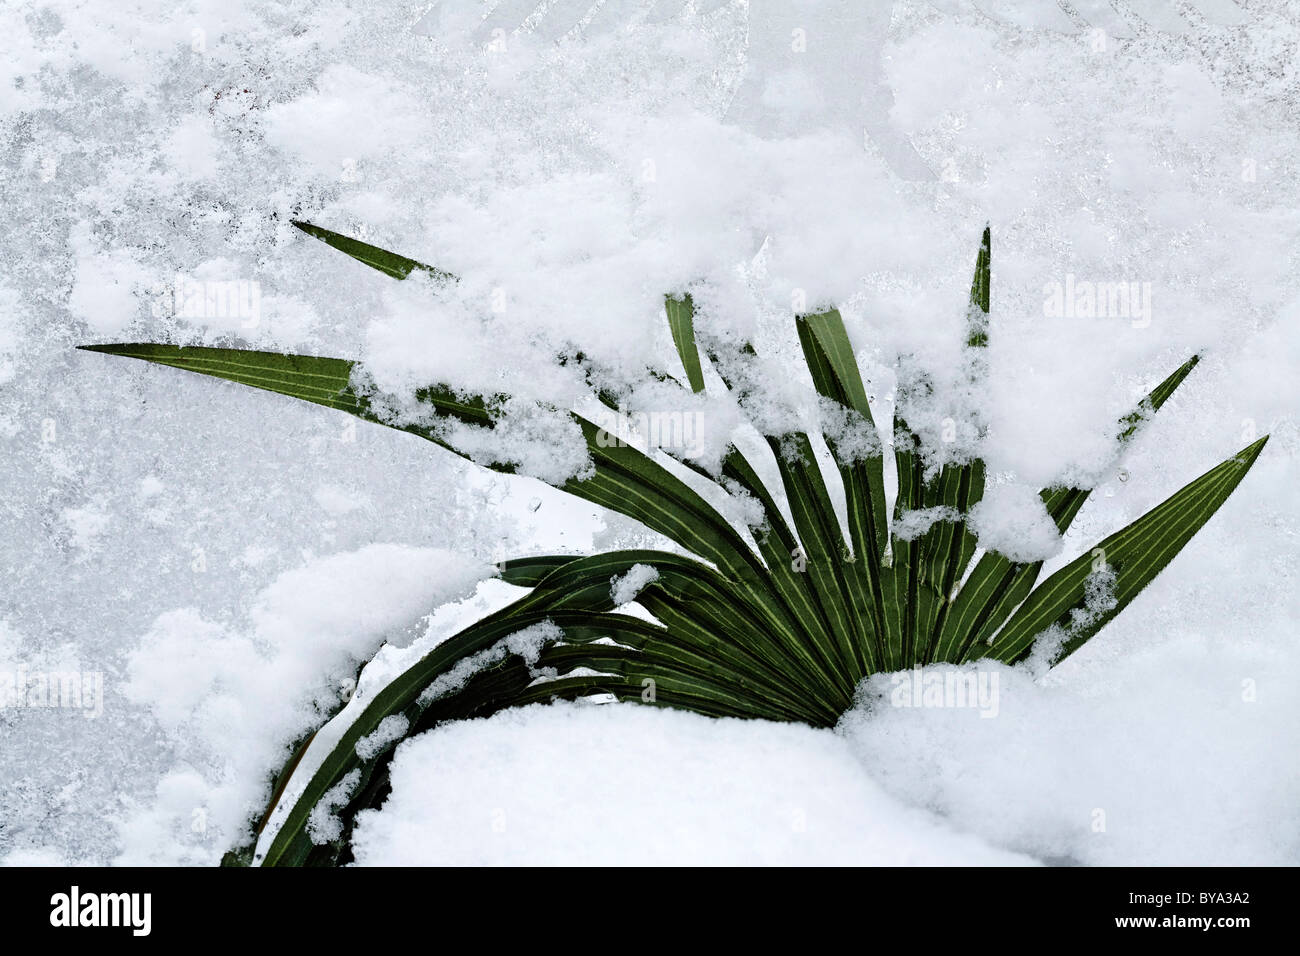 Neve artificiale coperta di foglie di palma, ghiacciato, all'aperto Foto Stock